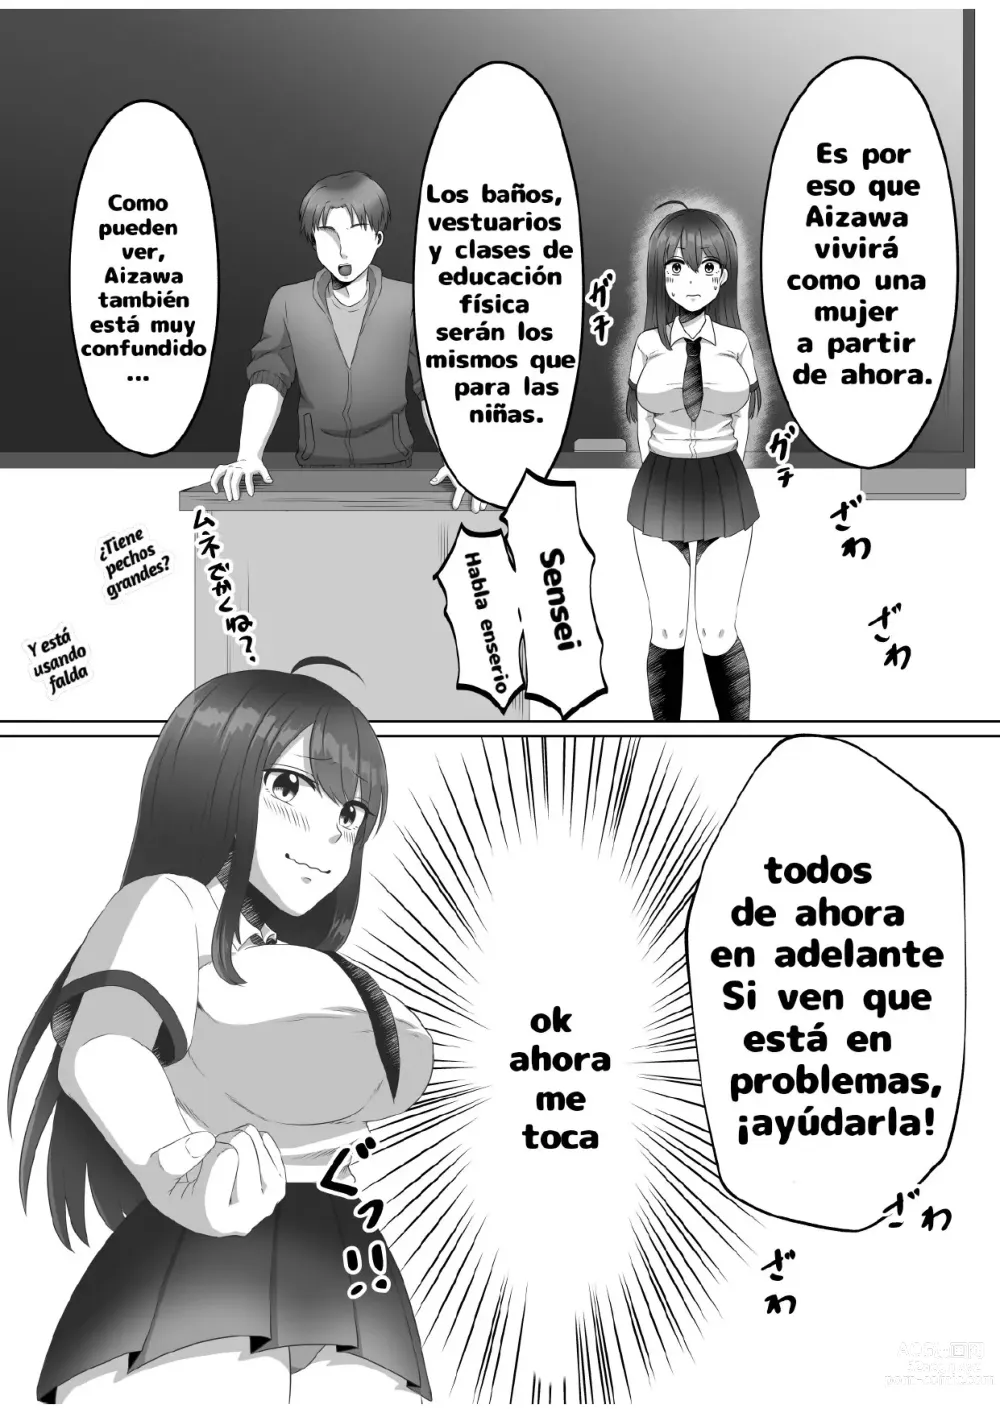 Page 7 of doujinshi ¿Porque me convertí en una mujer?